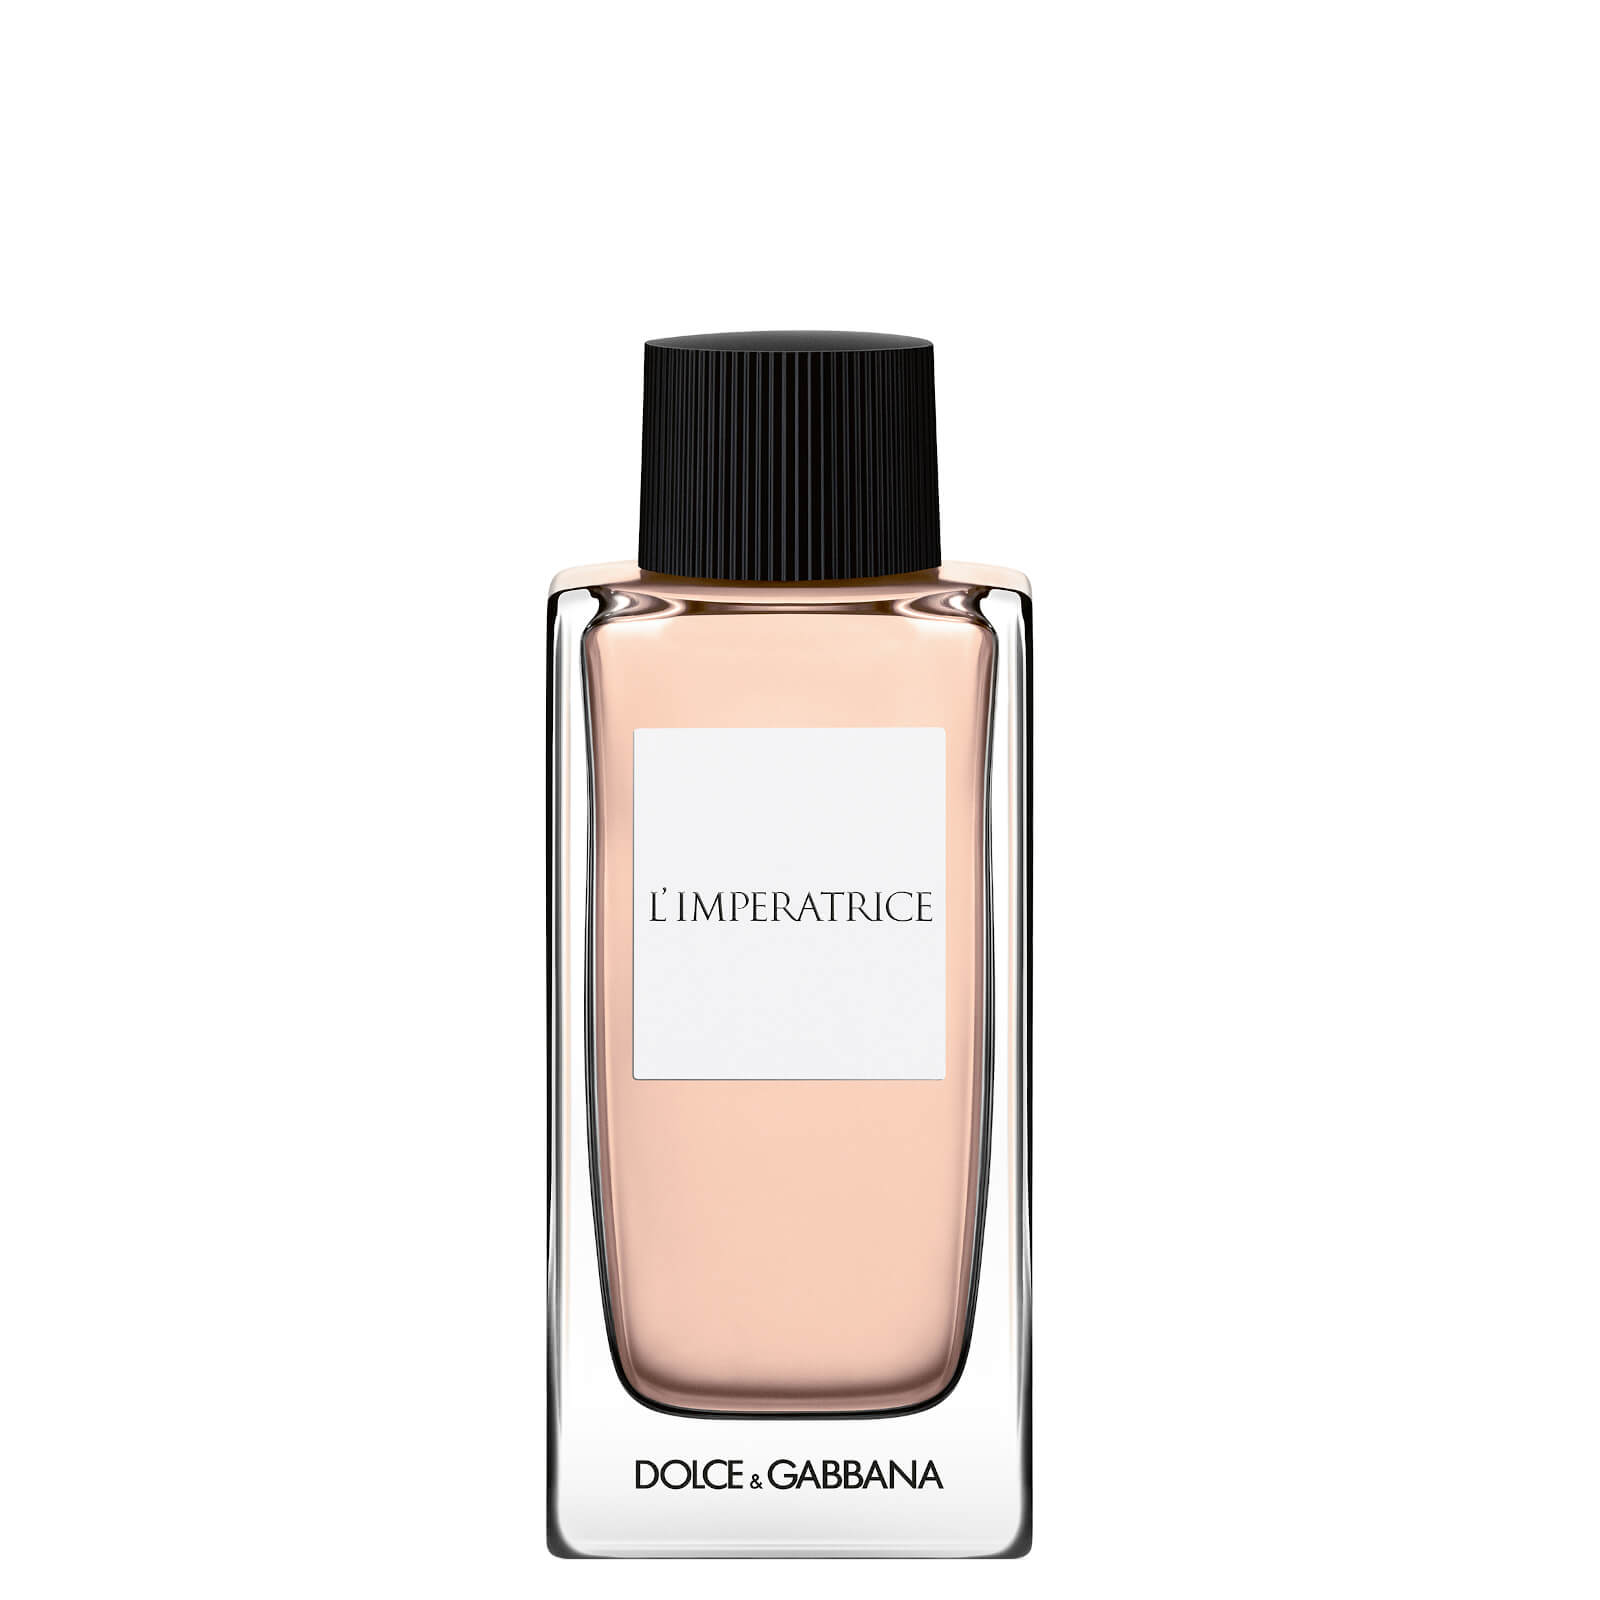 Dolce&Gabbana L'Imperatrice Eau de Toilette 100ml